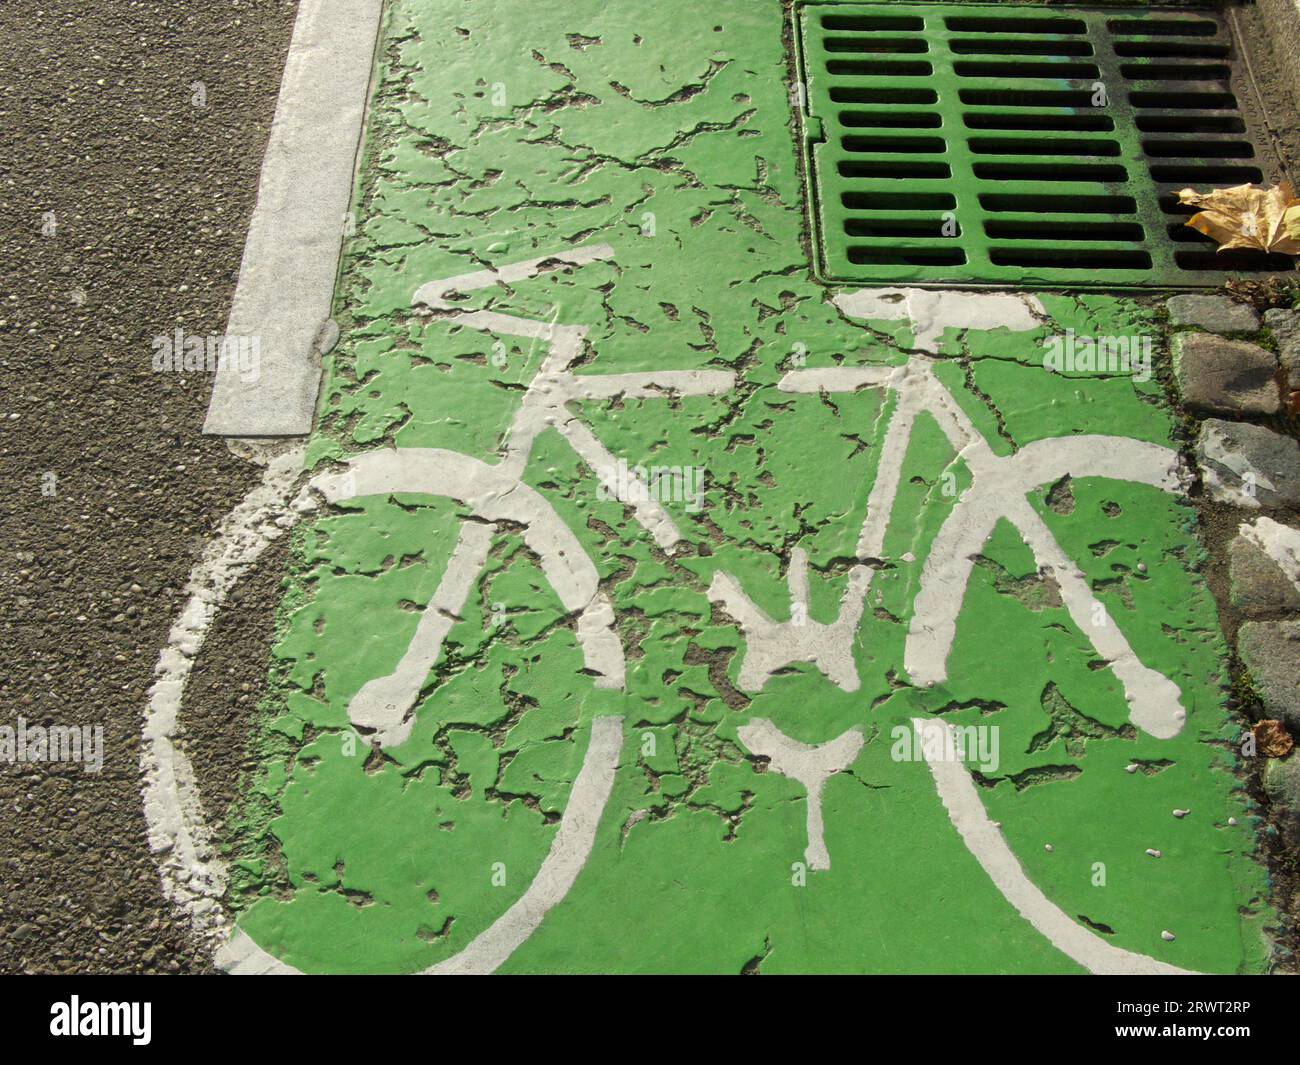 Fahrradroute, die mit einem weißen Fahrradsymbol in Grün gekennzeichnet ist Stockfoto